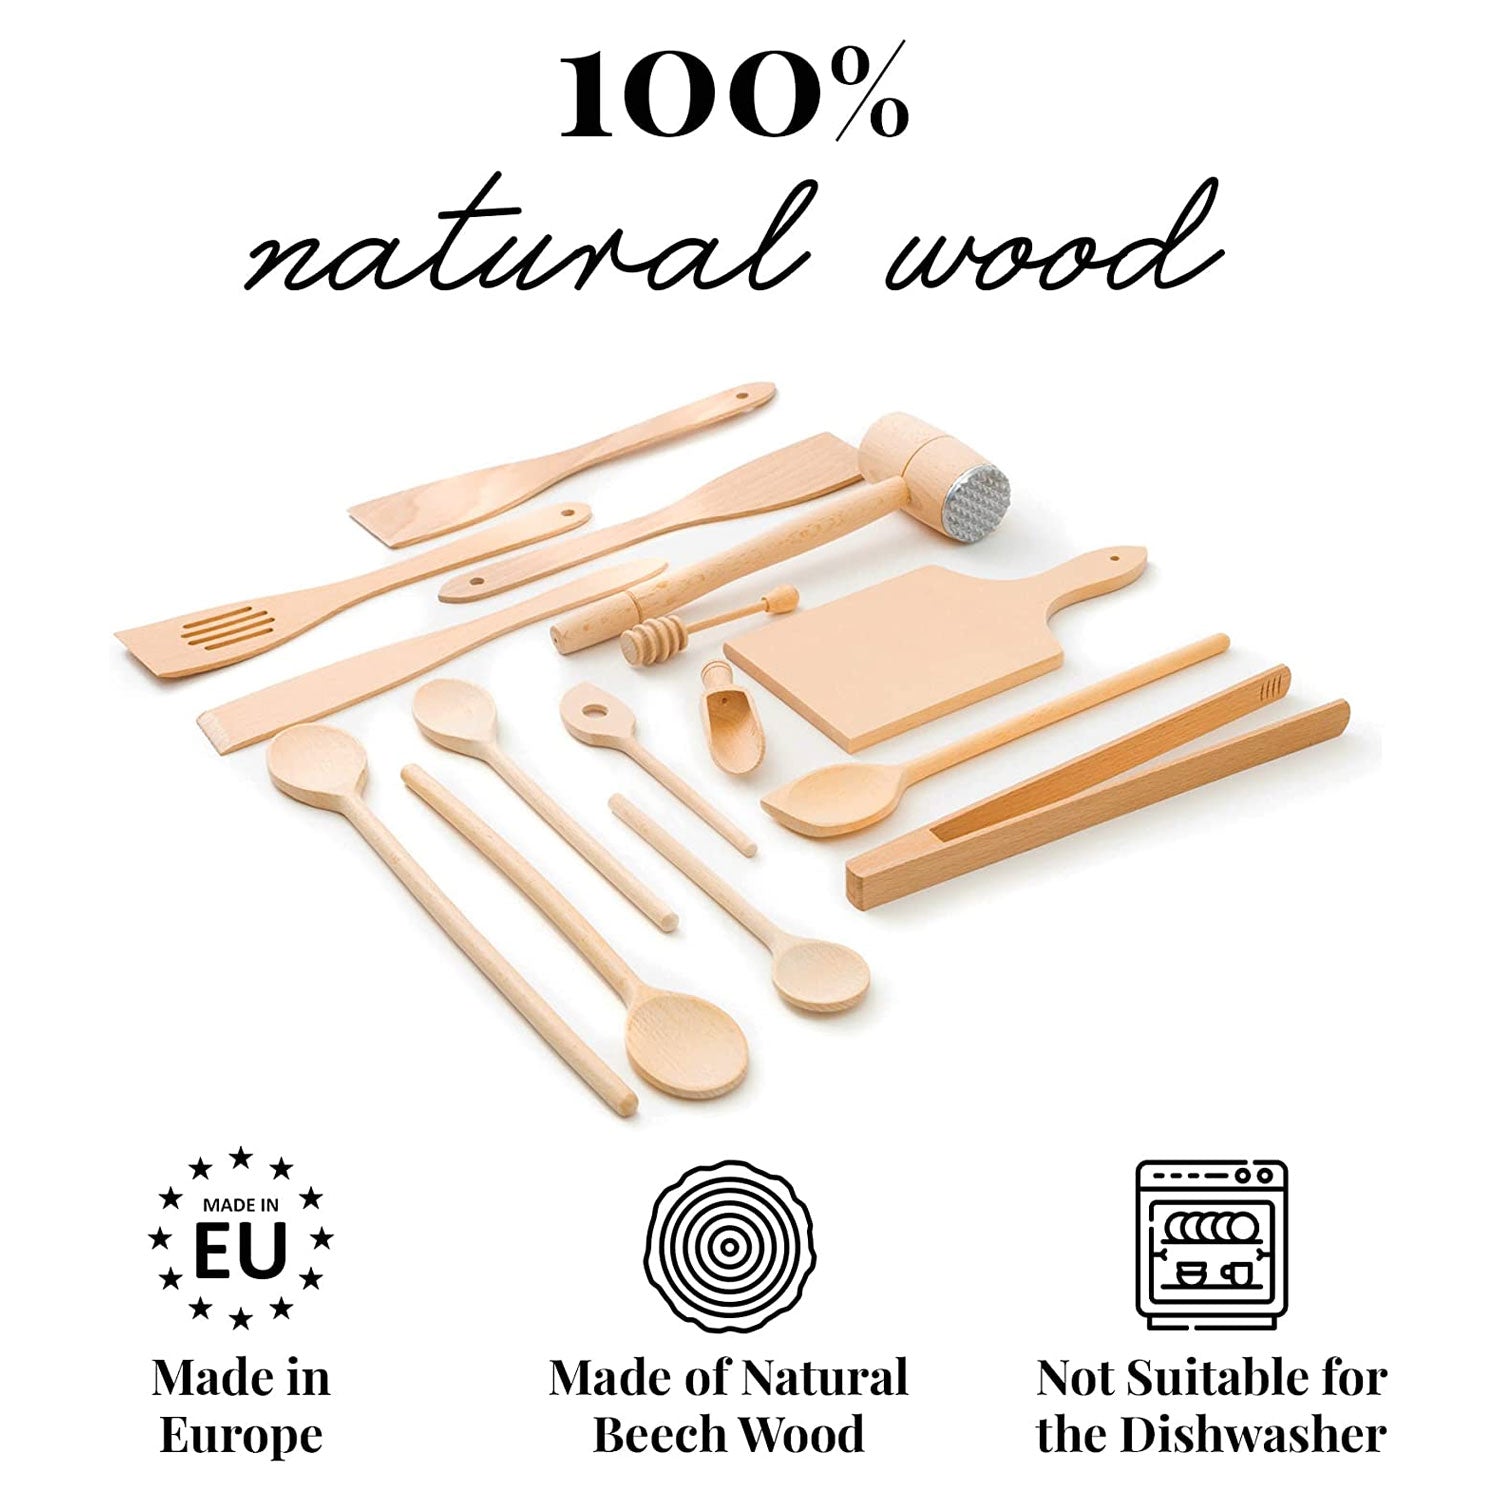 15 Piece Wooden Kitchen Utensil Set - 100% Natural Wood